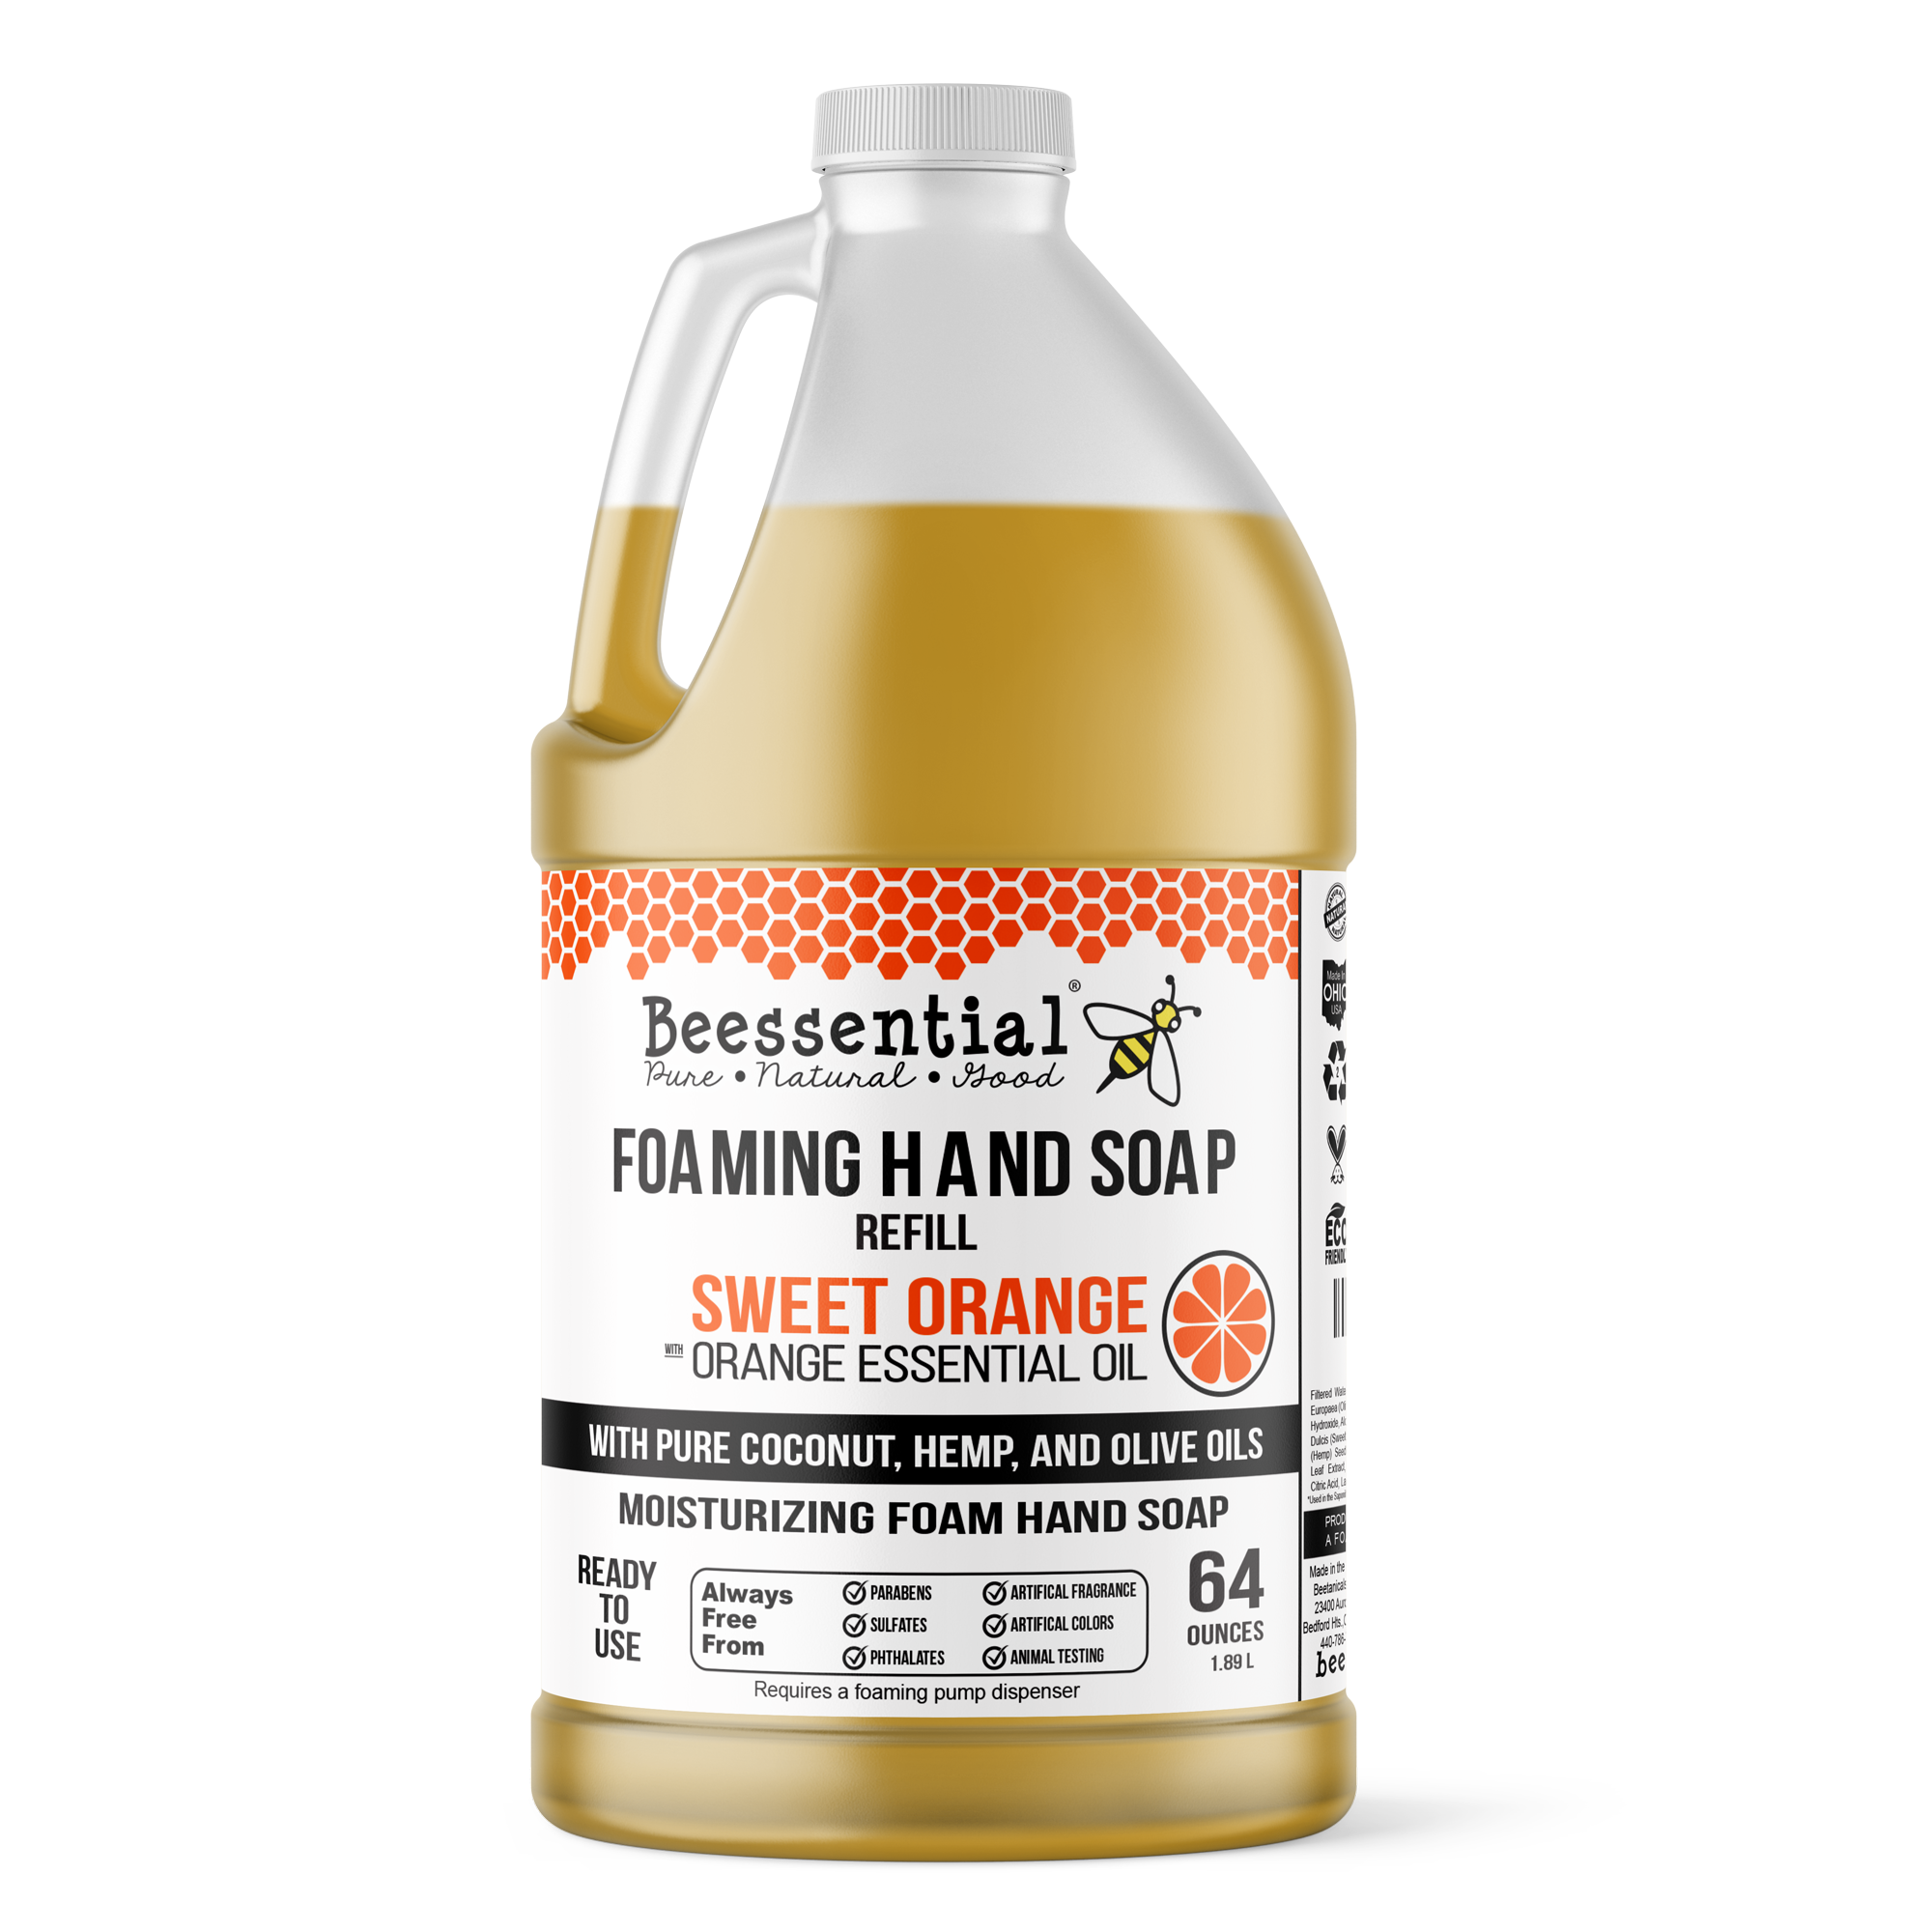 Orange Foaming Hand Soap Recipe - Citrus Vanilla Scent for Kids